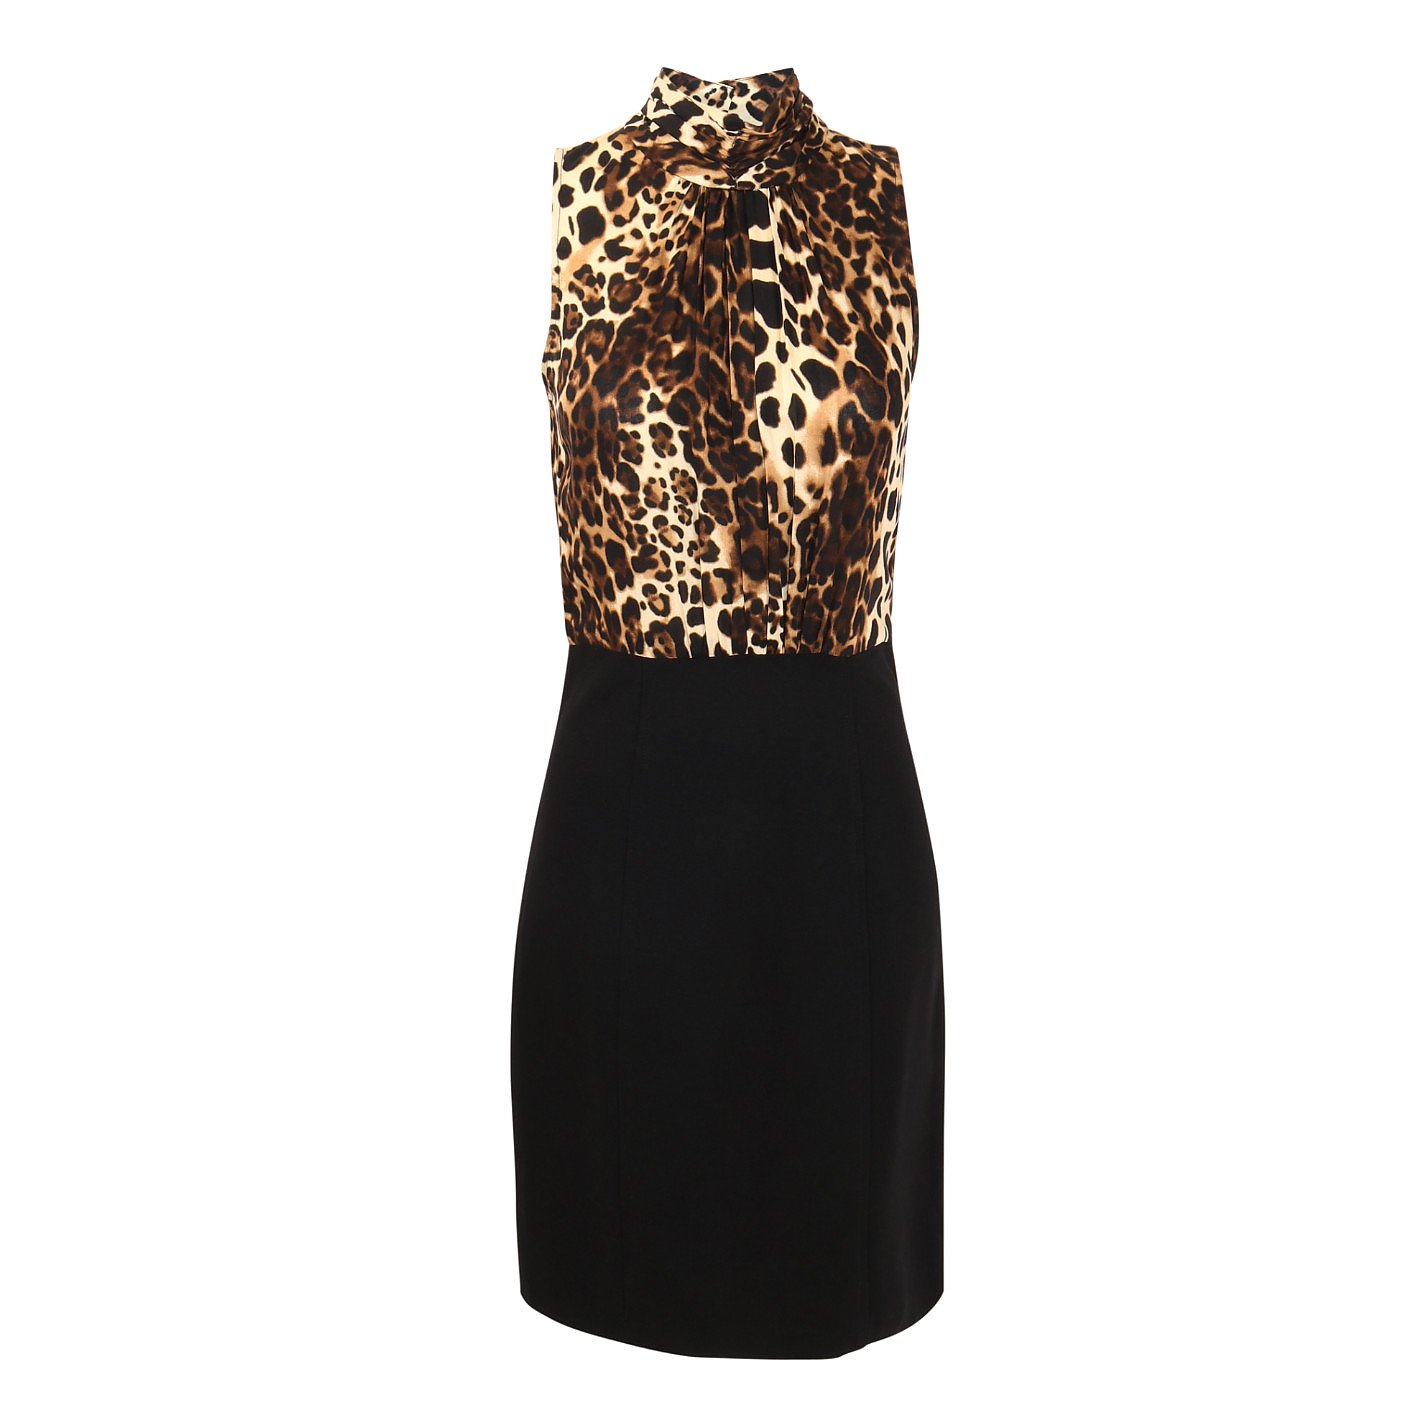 Sinéquanone Leopard Print Contrast Dress